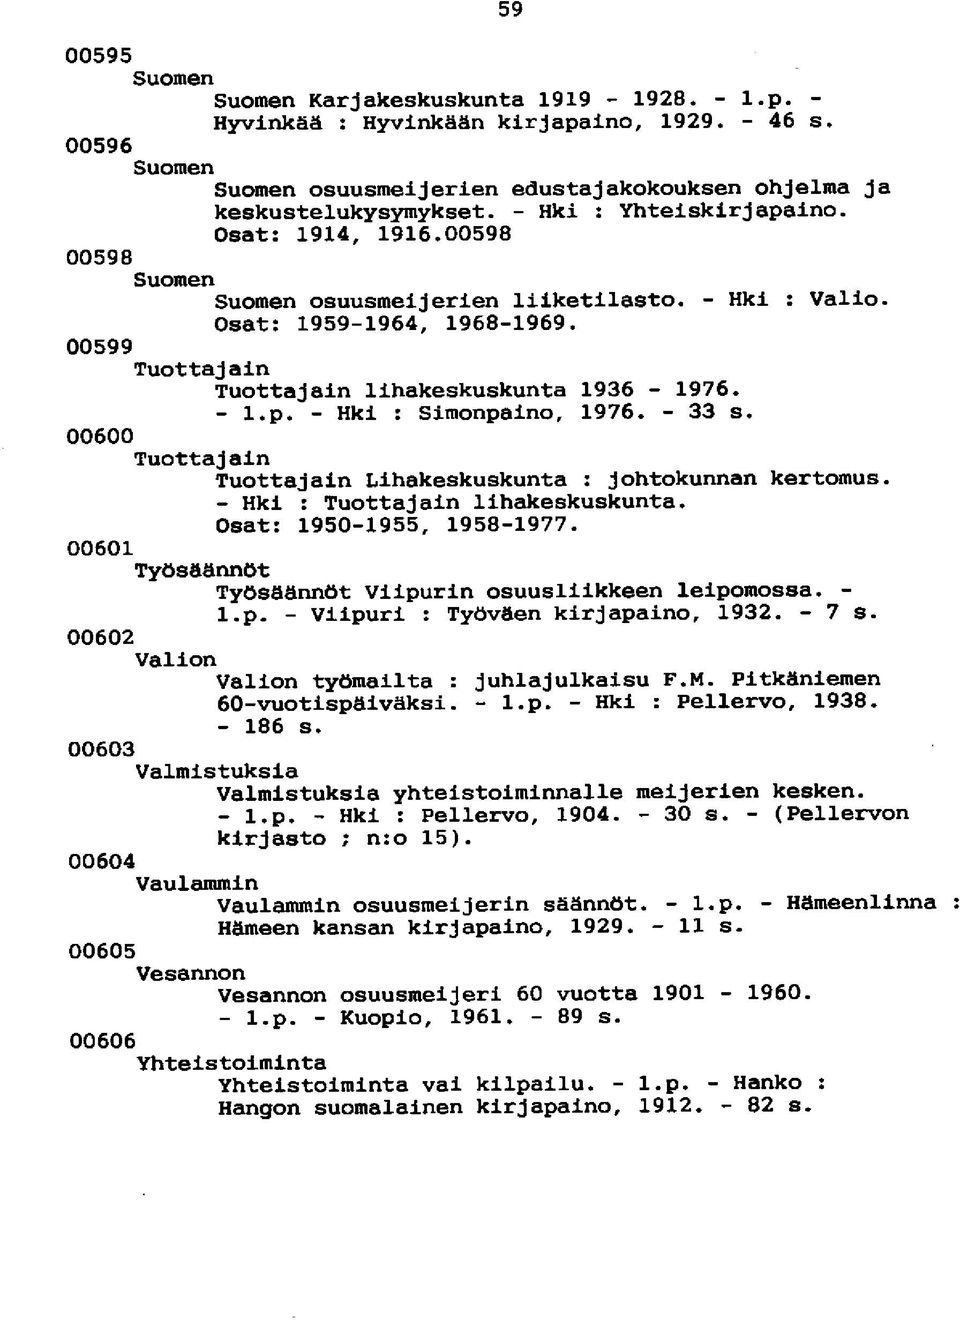 p. - Hki : Simonpaino, 1976. - 33 s. 00600 Tuottajain Tuottajain Lihakeskuskunta : johtokunnan kertomus. - Hki : Tuottajain lihakeskuskunta. Osat: 1950-1955, 1958-1977.